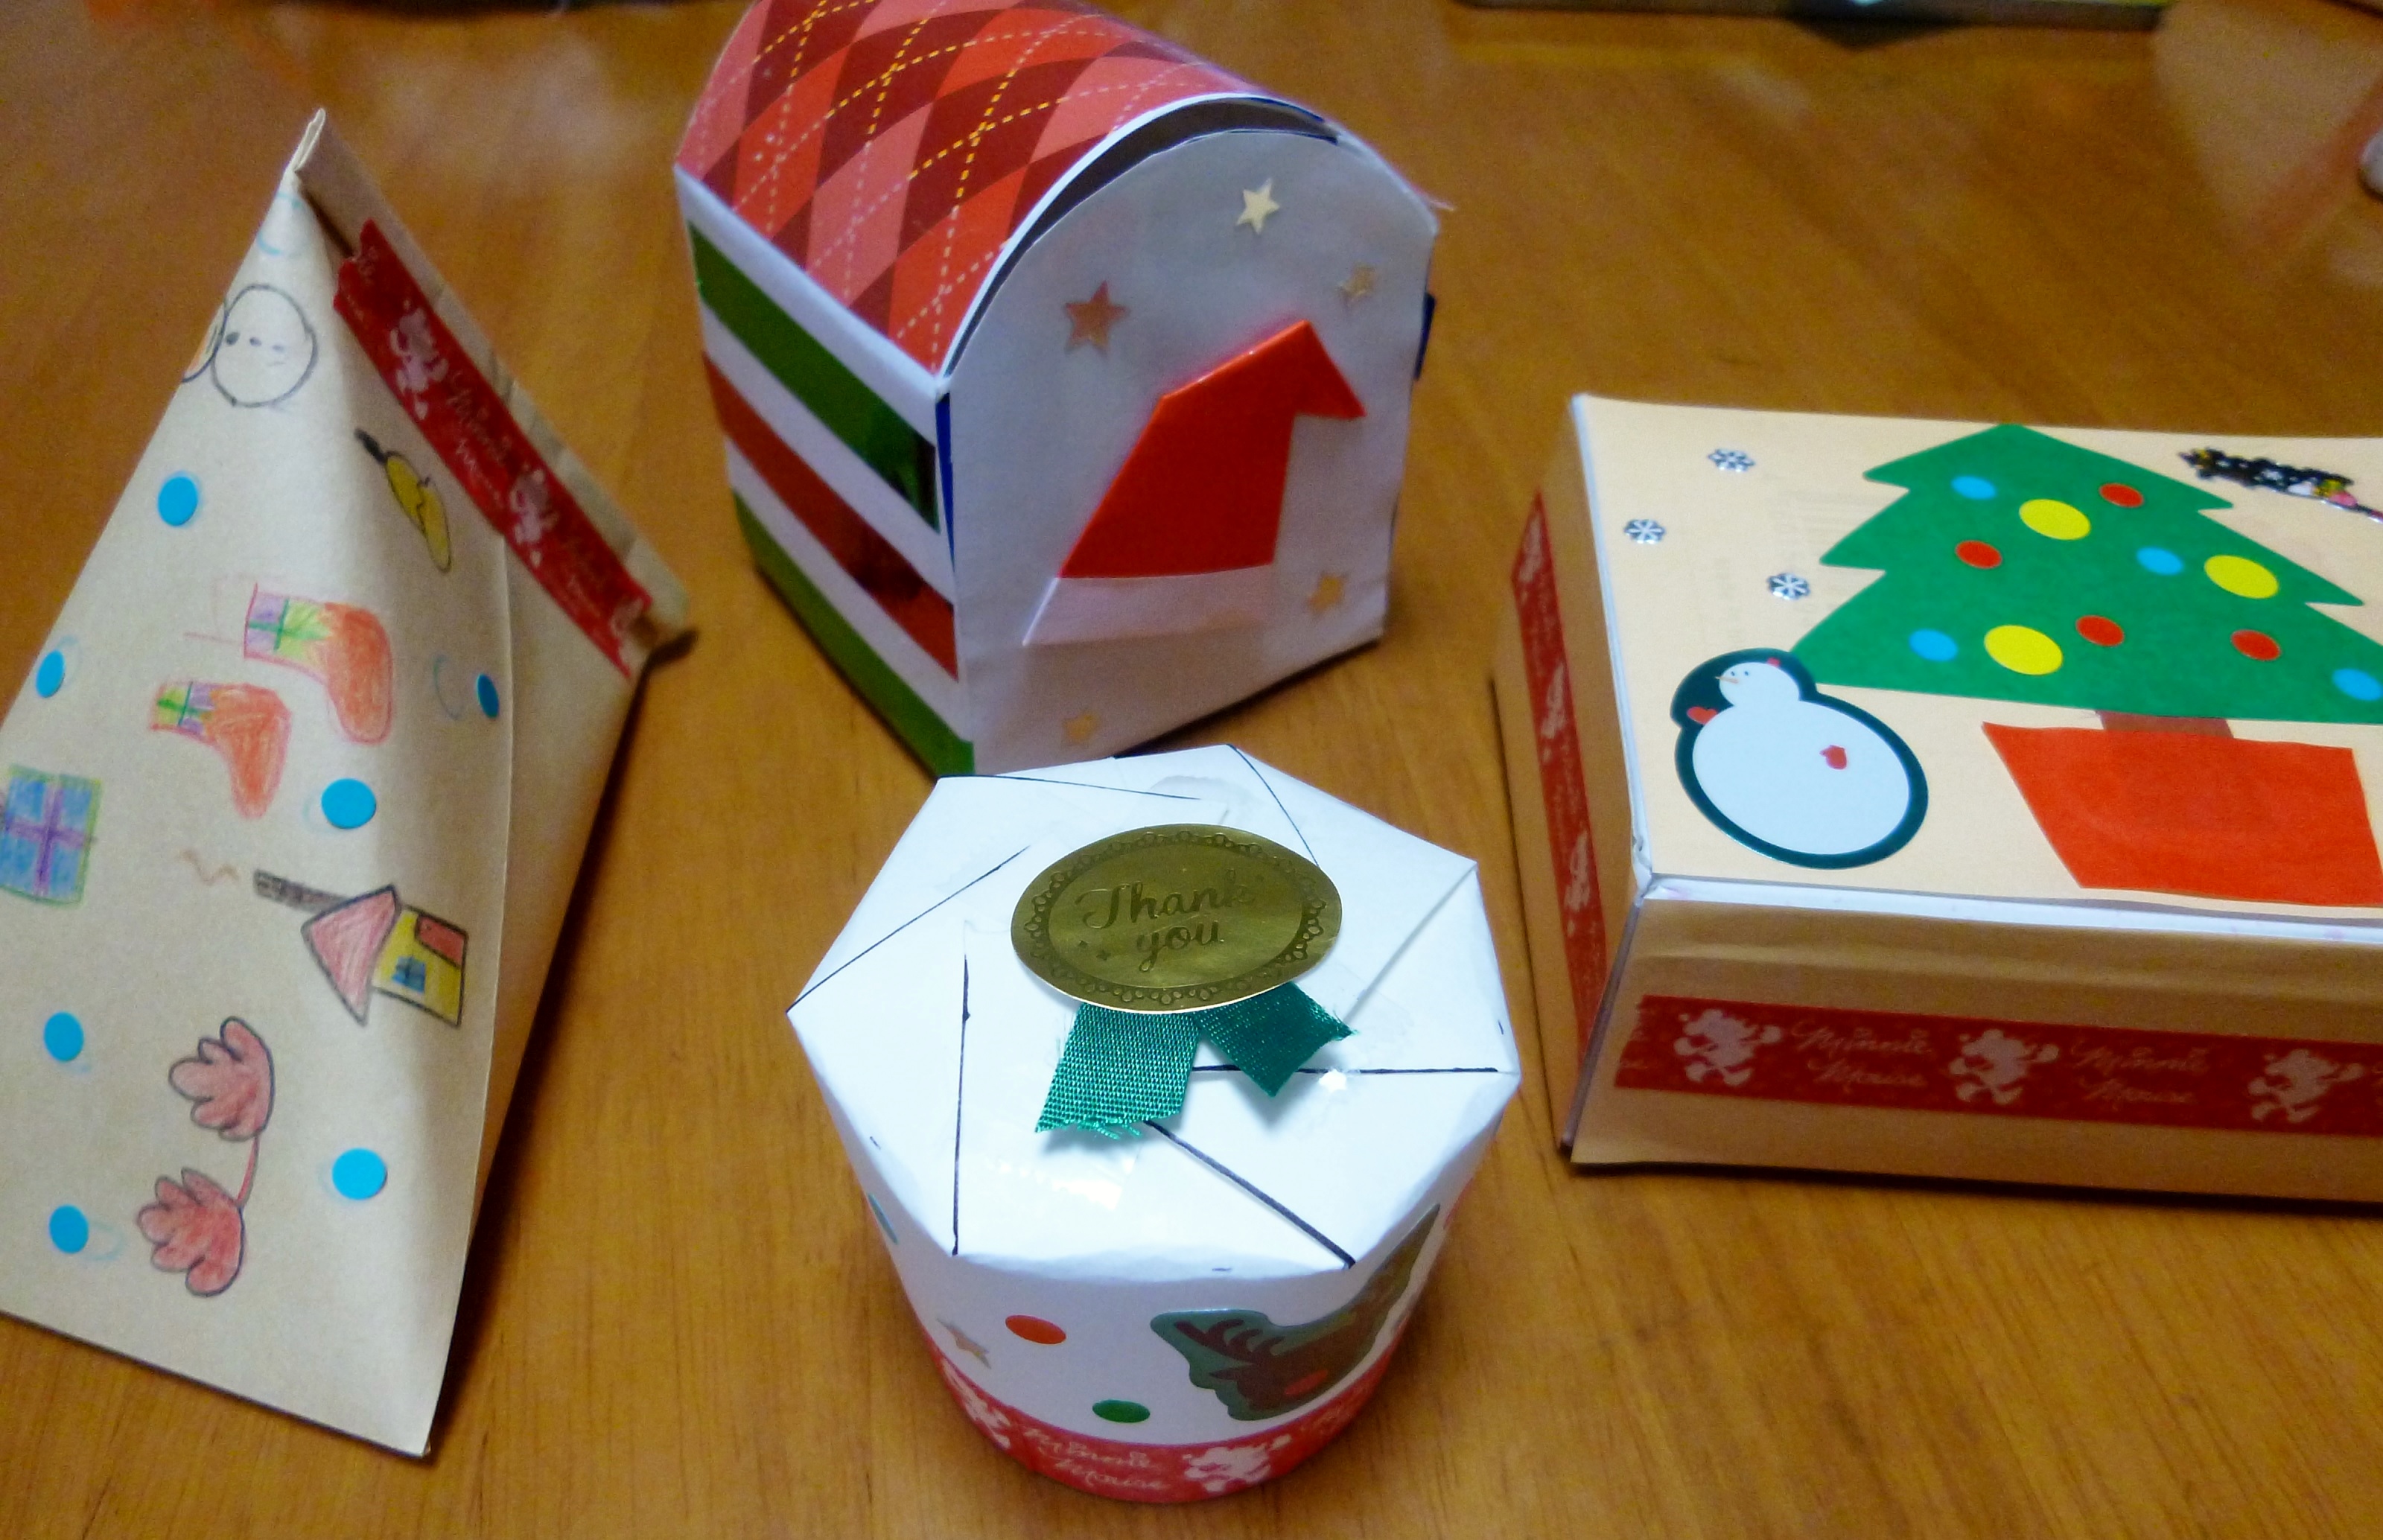 手作りクリスマス お菓子入れ 家にあるもの 牛乳パック ティッシュ箱 紙コップ 封筒 で簡単工作 子供と楽しく作ってみよう 湘南エリア 横浜 湘南で子供と遊ぶ あそびい横浜 湘南